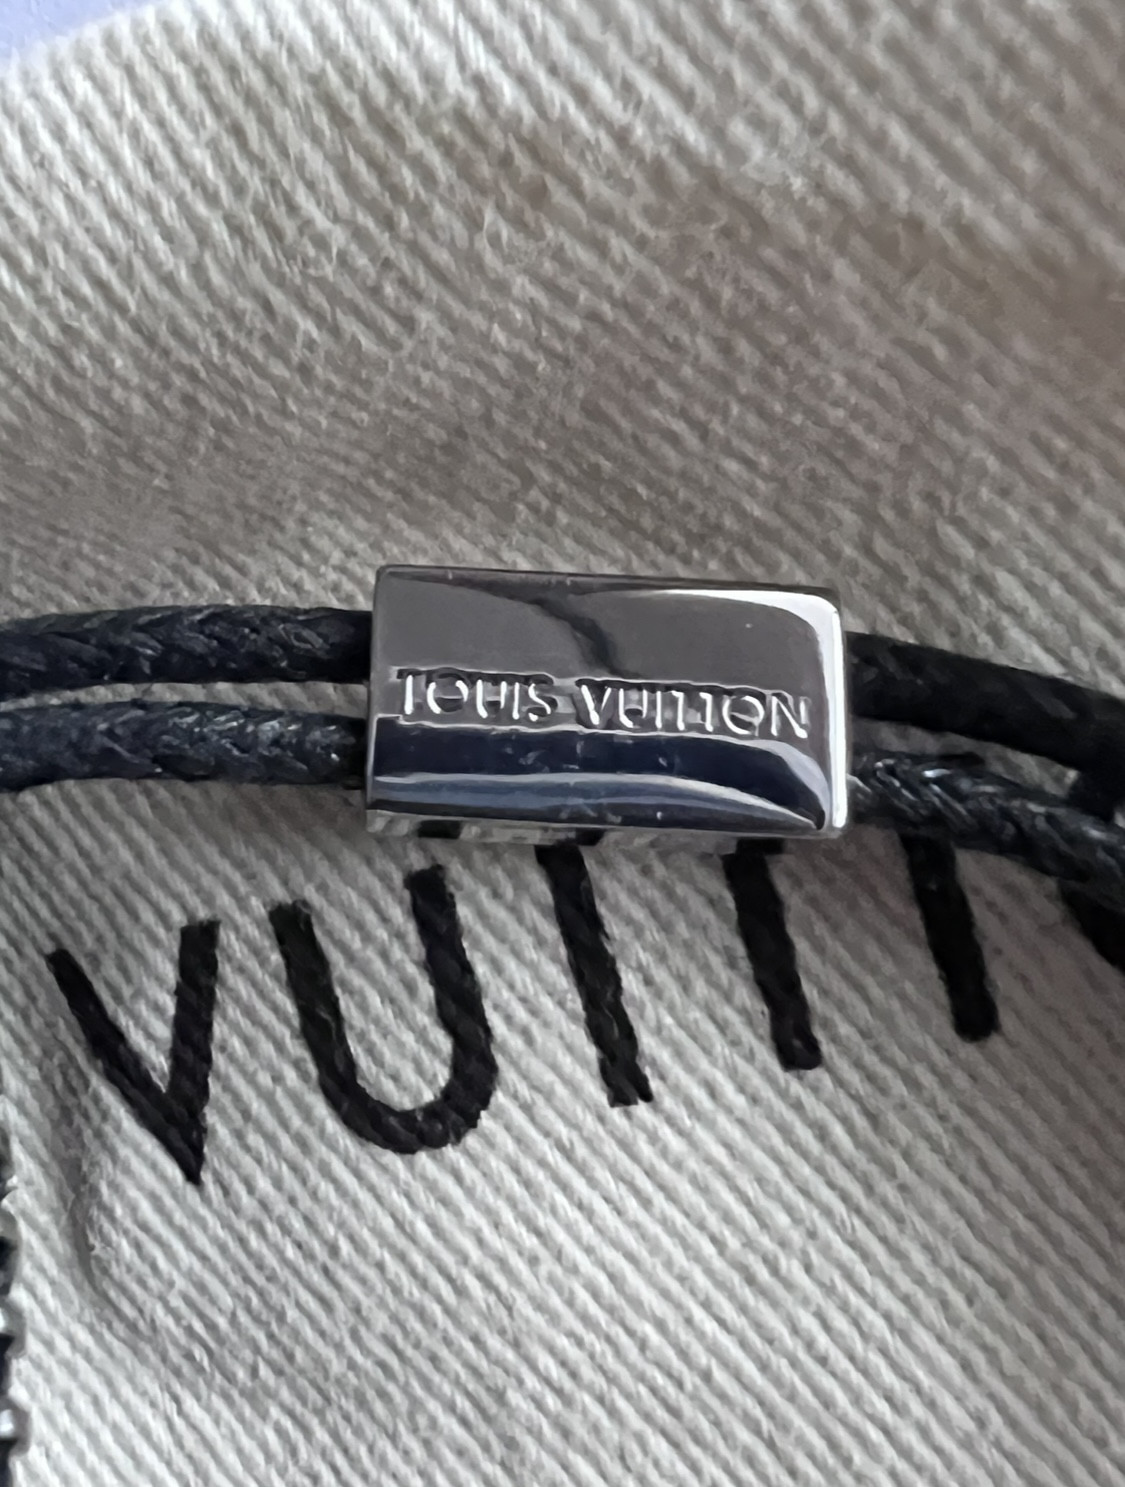 Part 2 - Louis Vuitton - Replica Accessories (Wallets, Belts